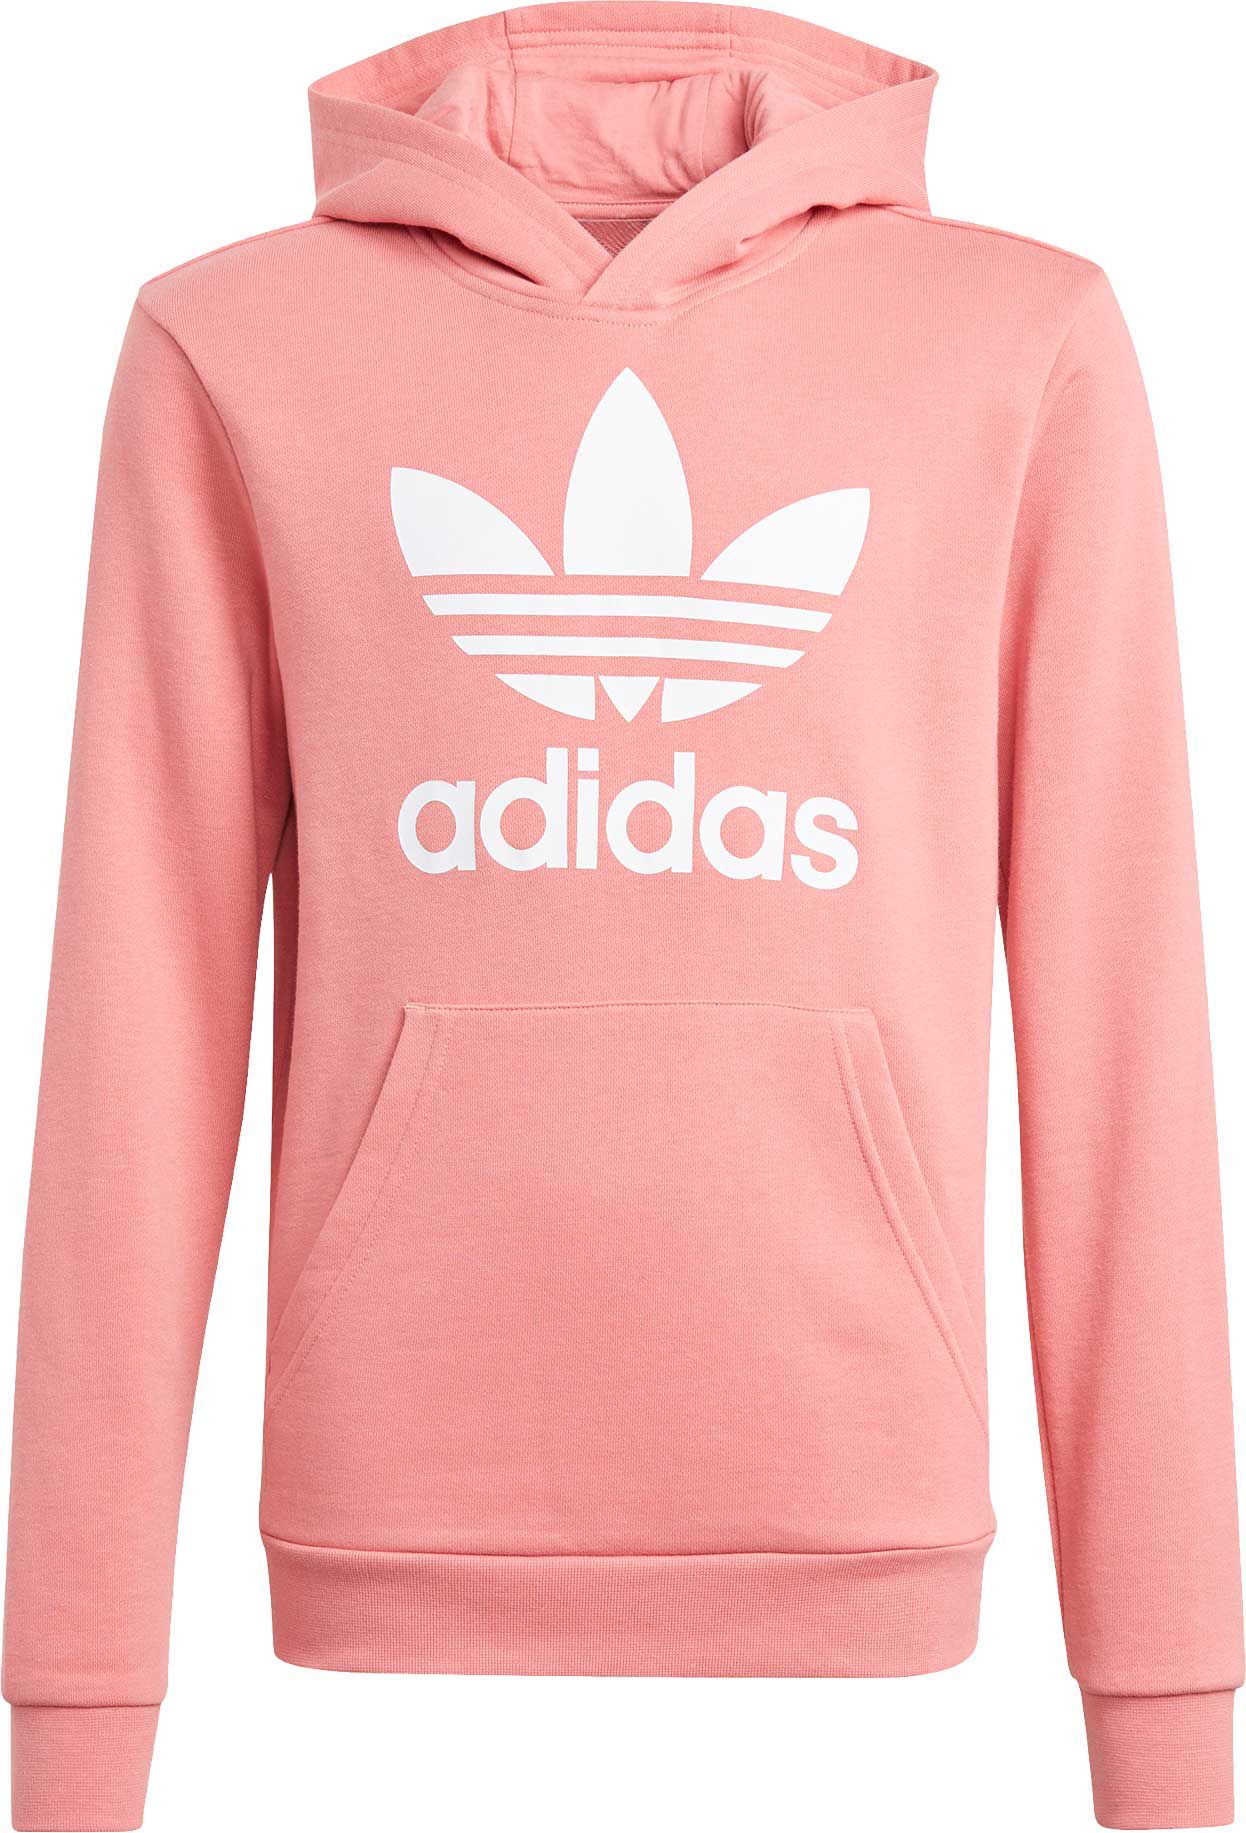 adidas zip up hoodie womens pink